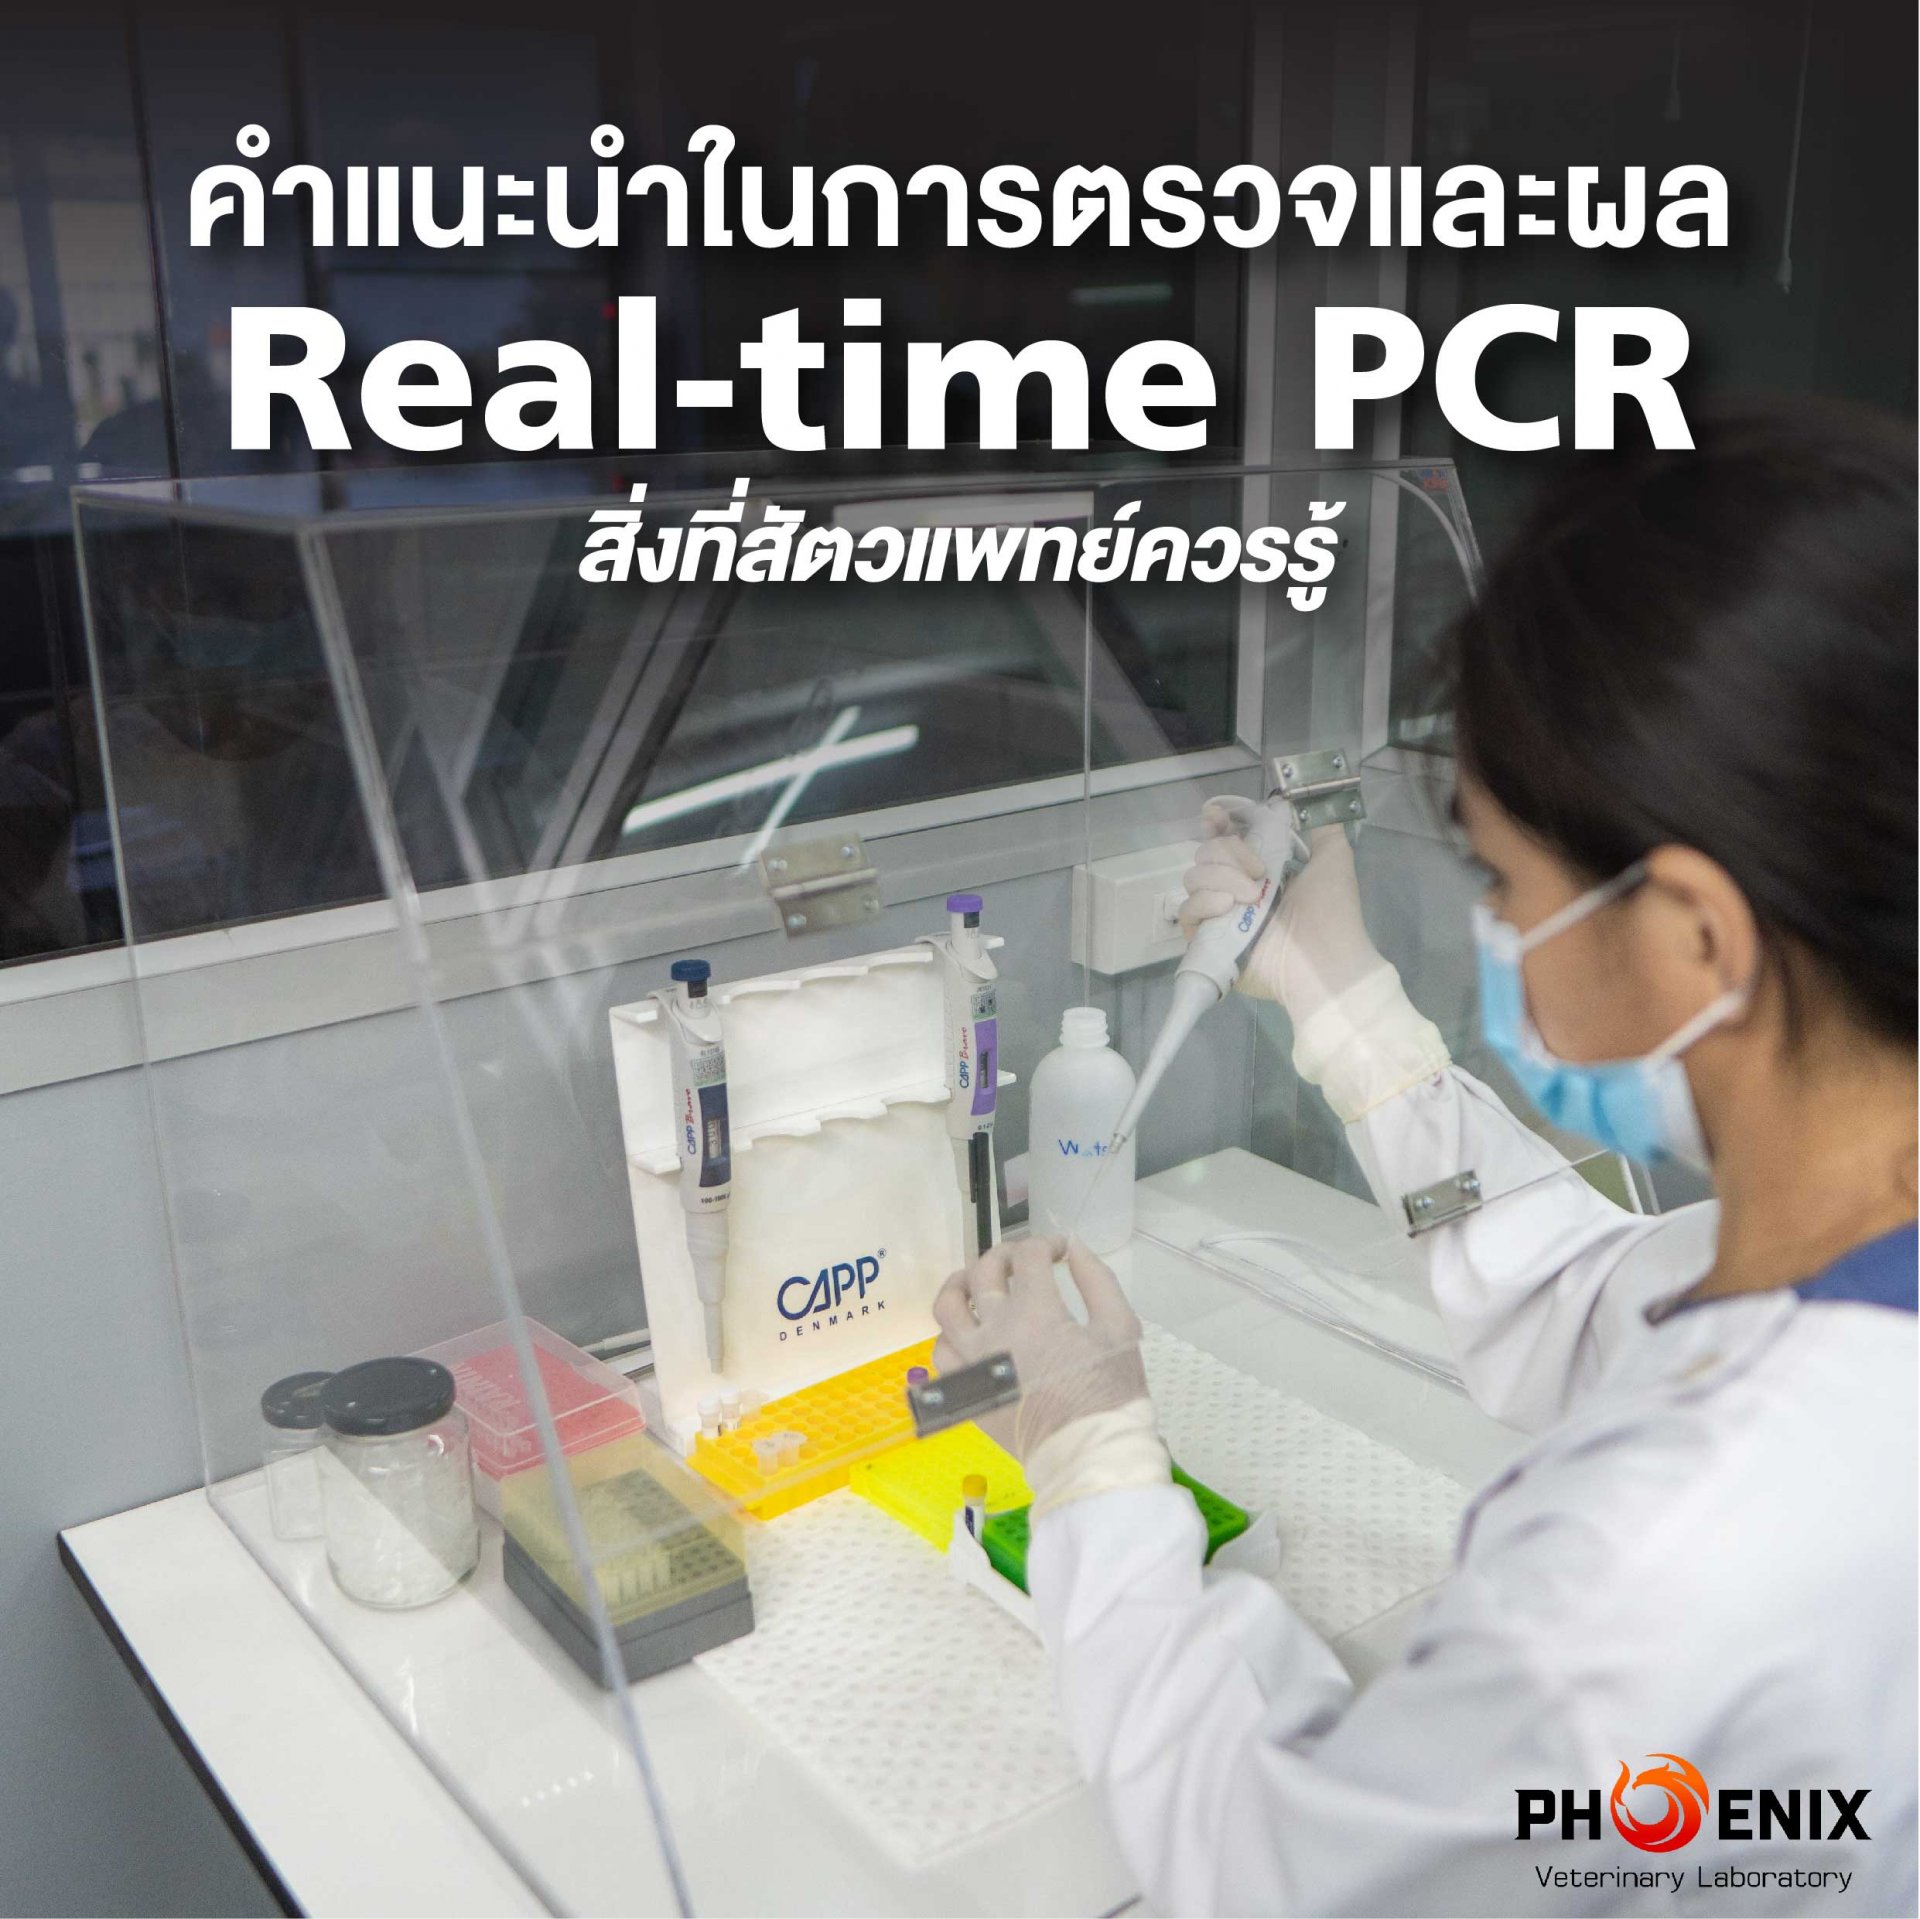 คำแนะนำในการตรวจและผล Real-time PCR สิ่งที่สัตวแพทย์ควรรู้